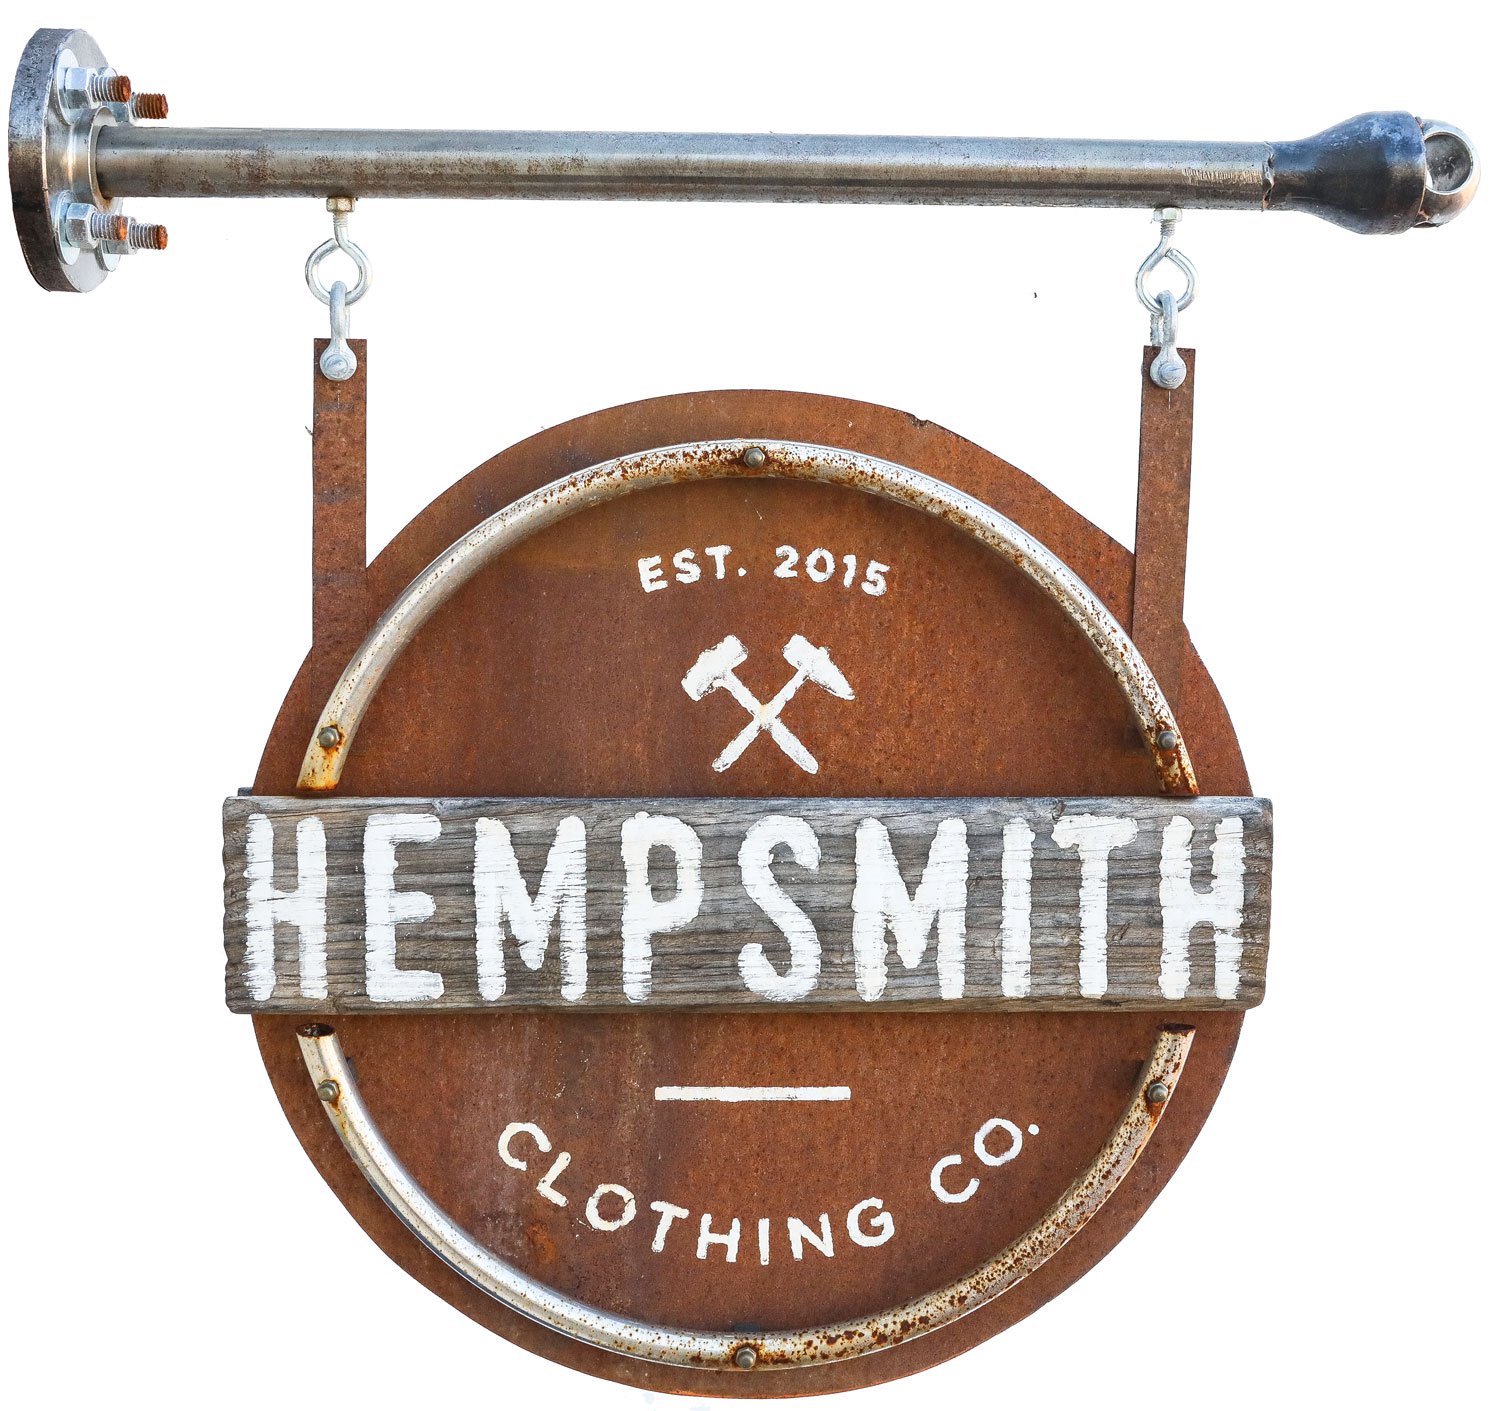 Hempsmith Clothing